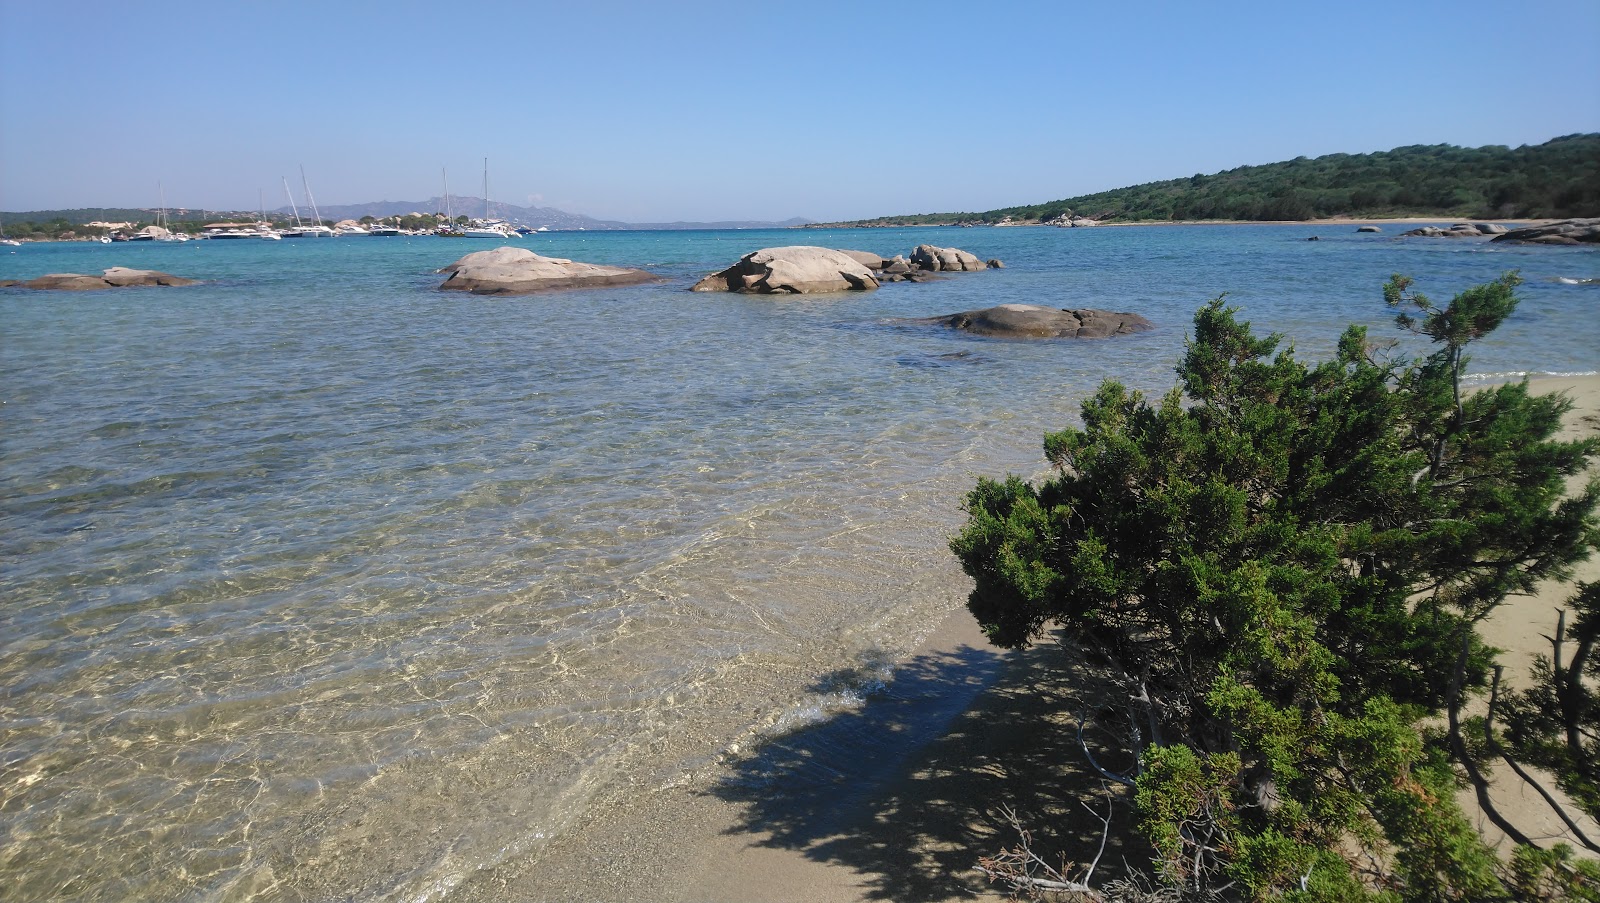 Foto av Spiaggia de Bahas med rymliga multifack